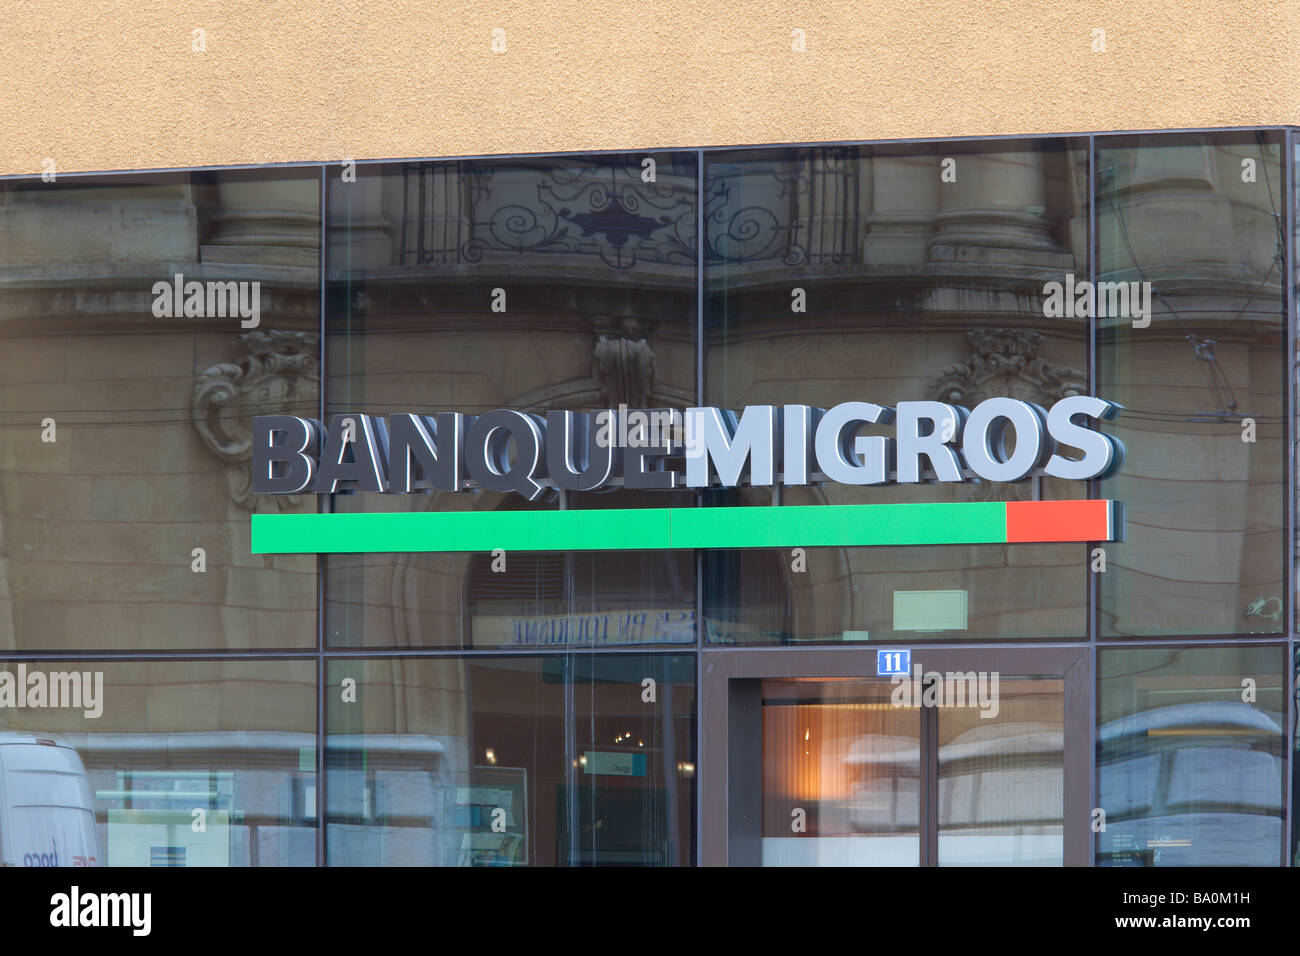 Banque Migros in Neuchatel Switzerland Stock Photo